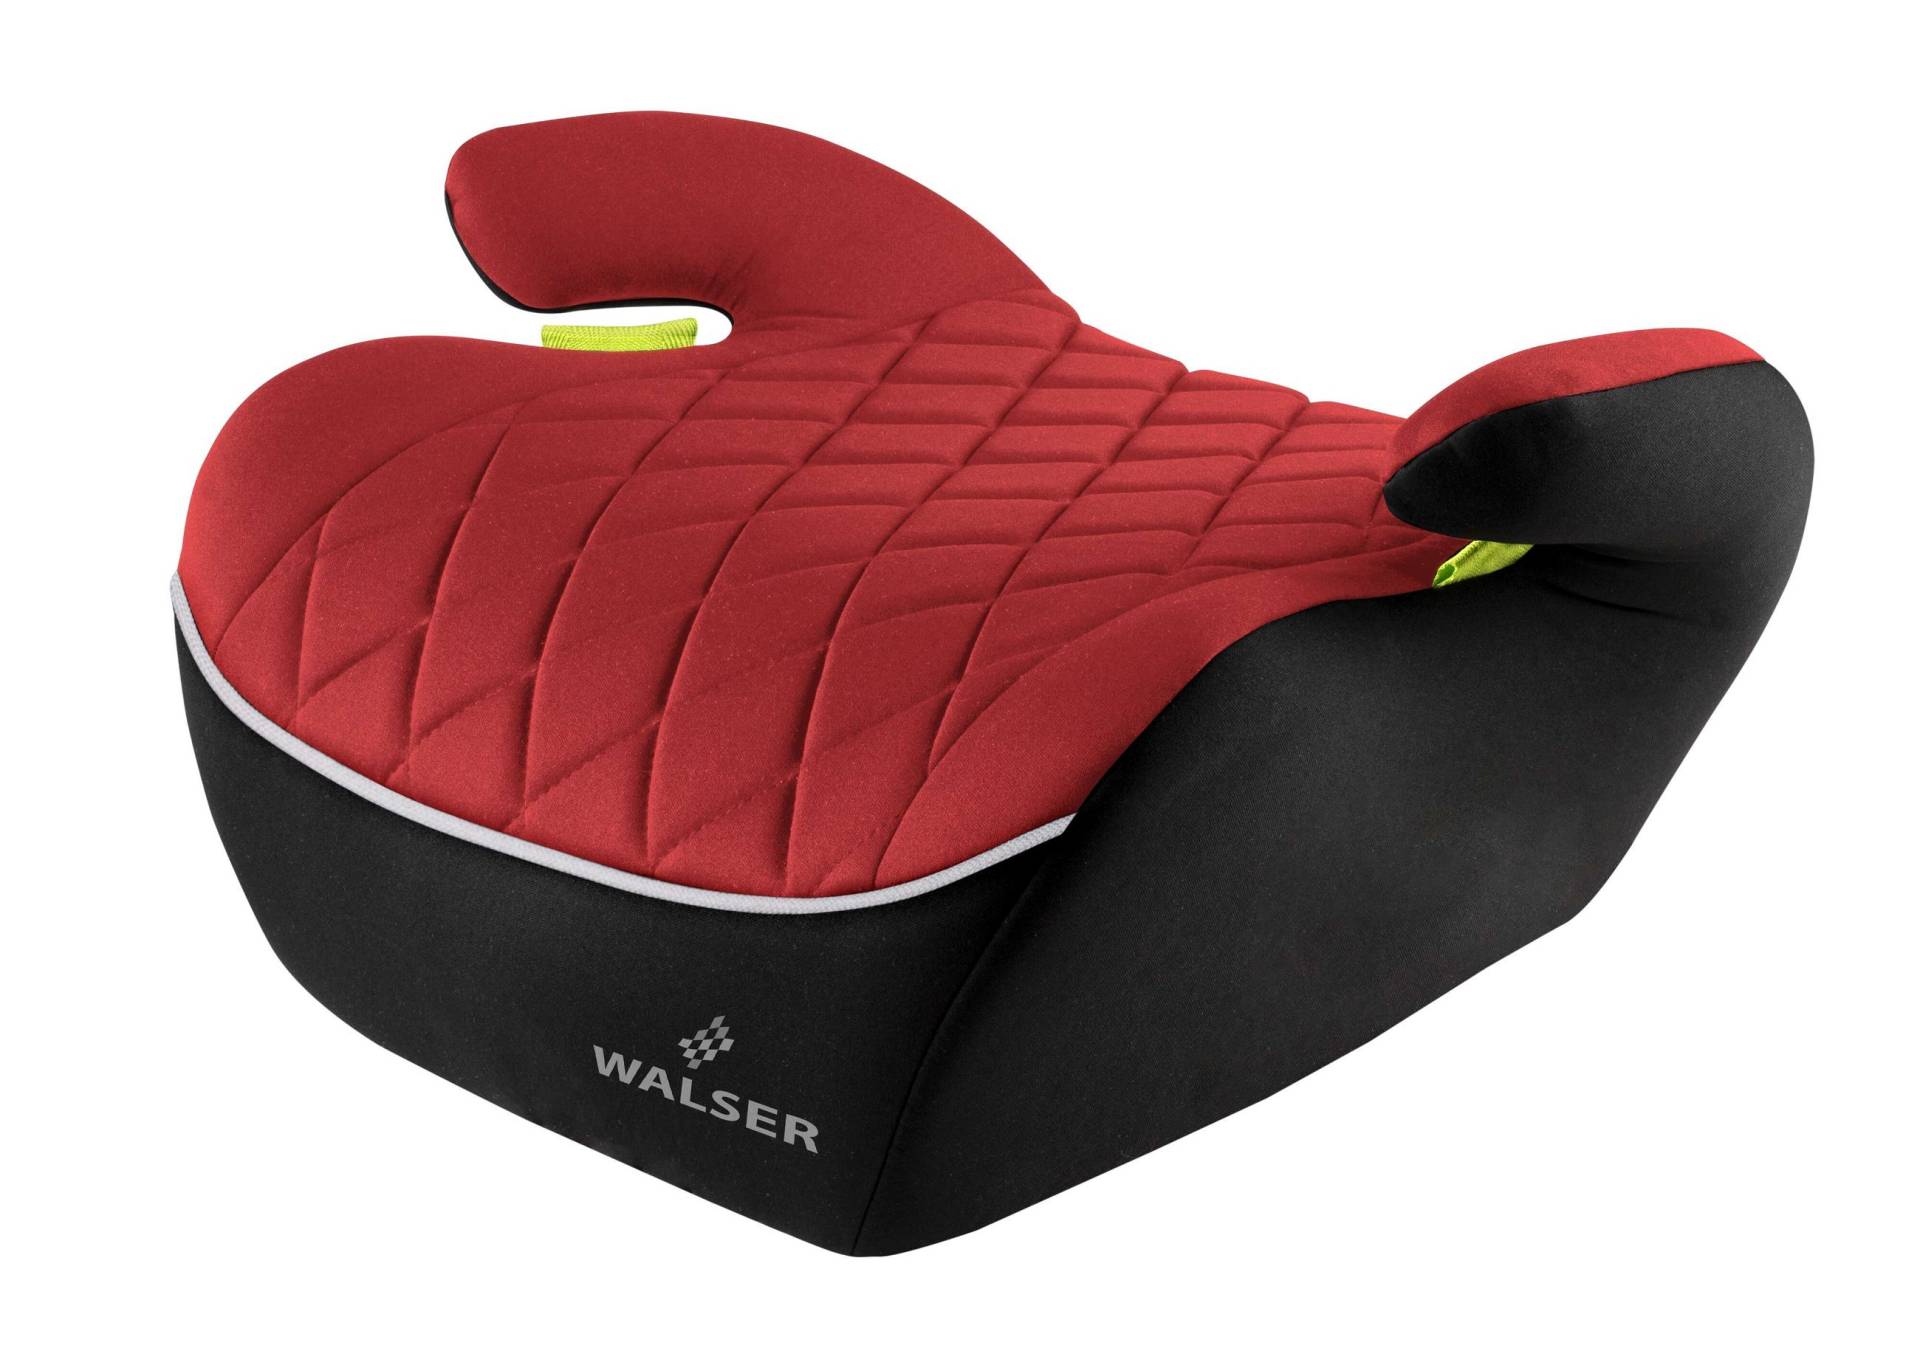 Kindersitzerhöhung Andy, Premium Sitzerhöhung Auto ECE R 129 geprüft, Kindersitz schwarz/rot von WALSER